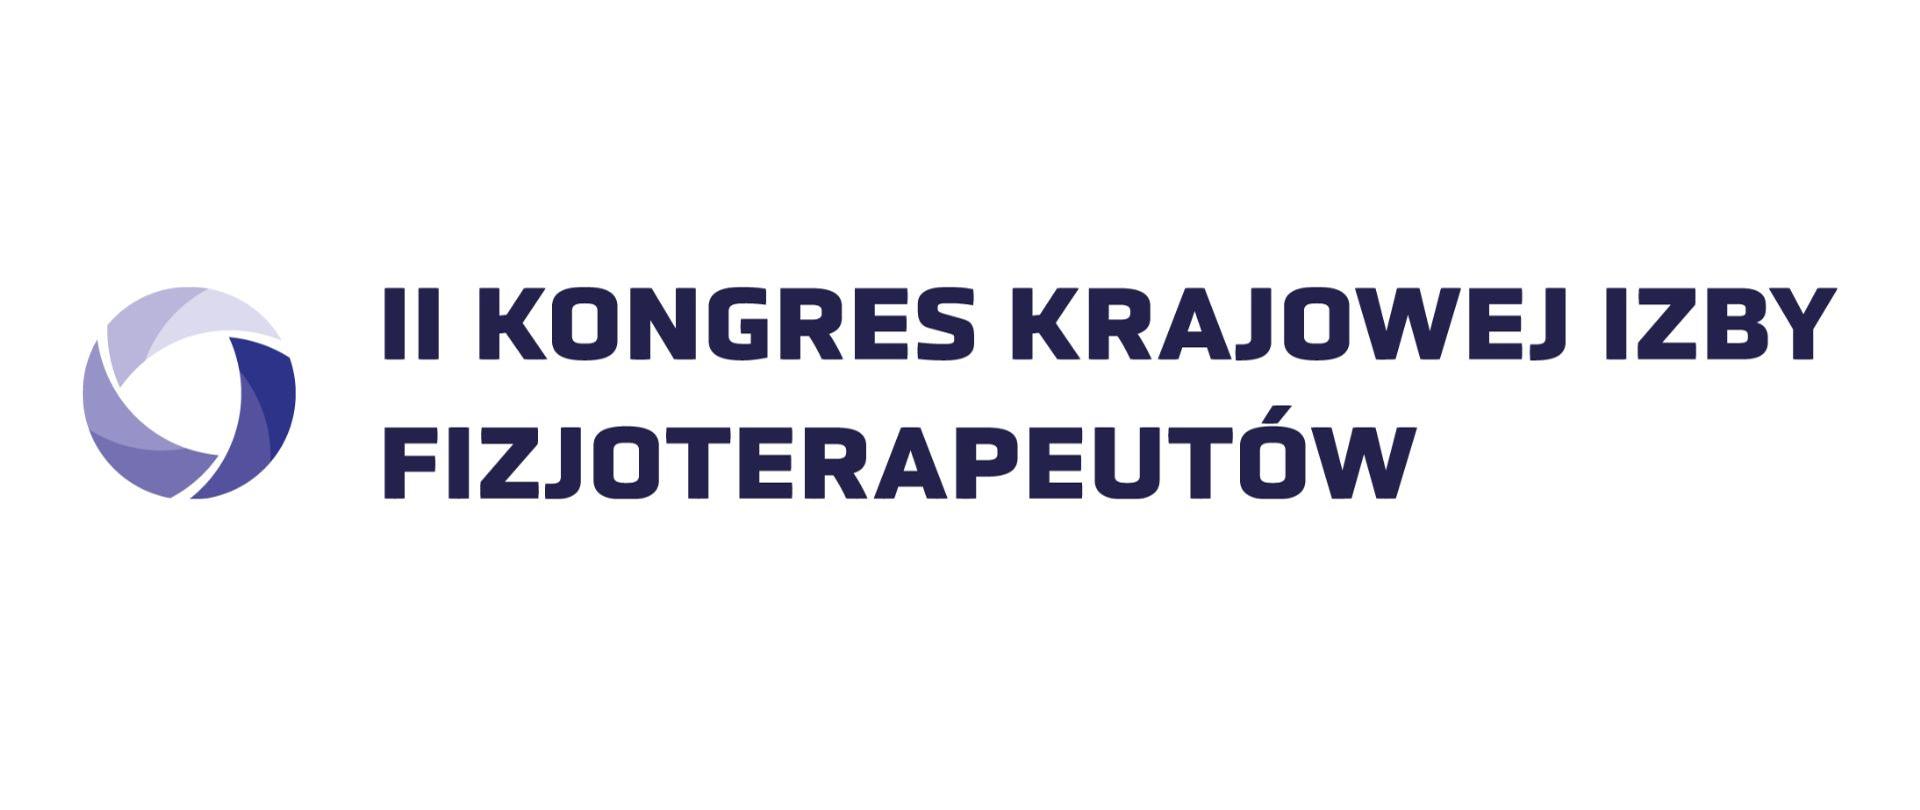 logo II kongresu krajowego izby fizjoterapeutów